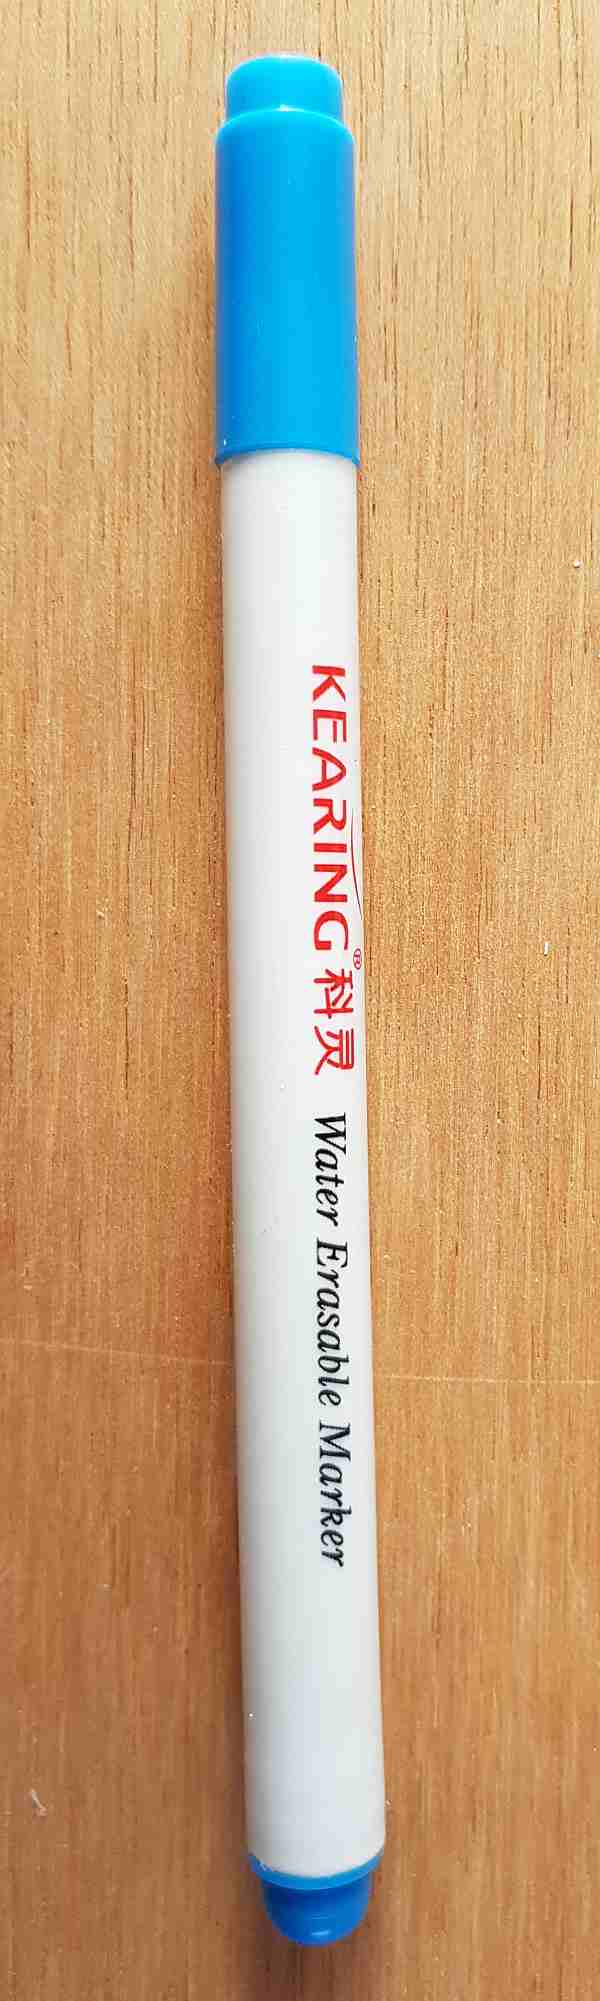 Fabric marking pens - washable